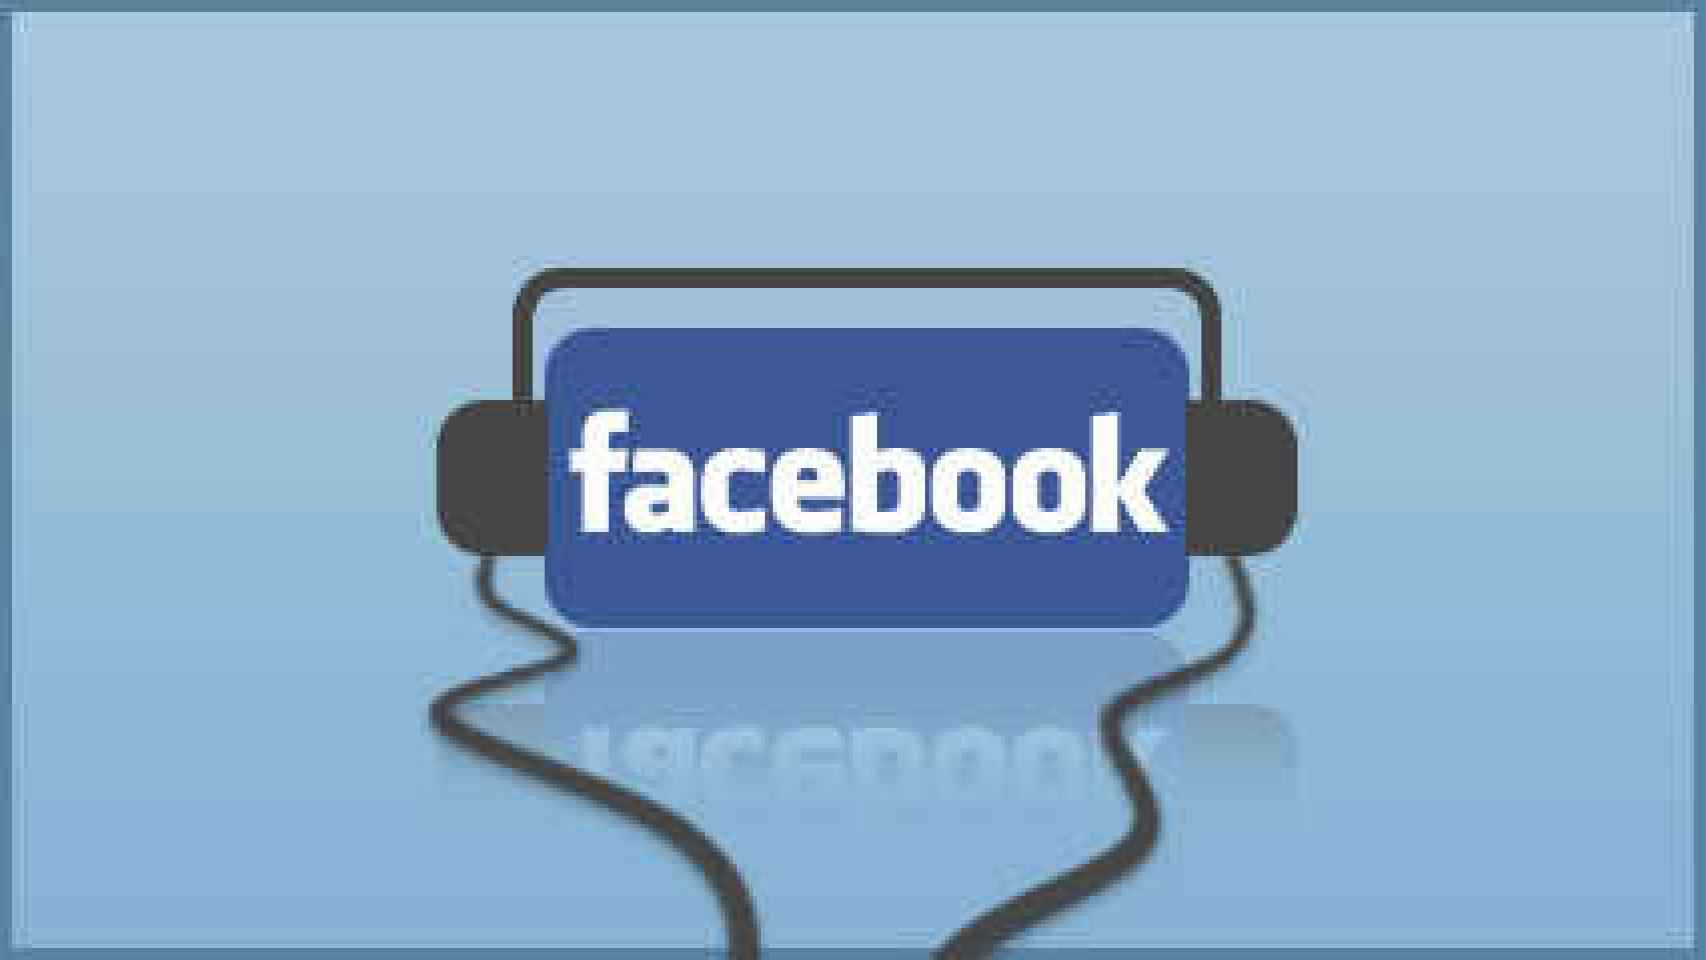 facebook-music